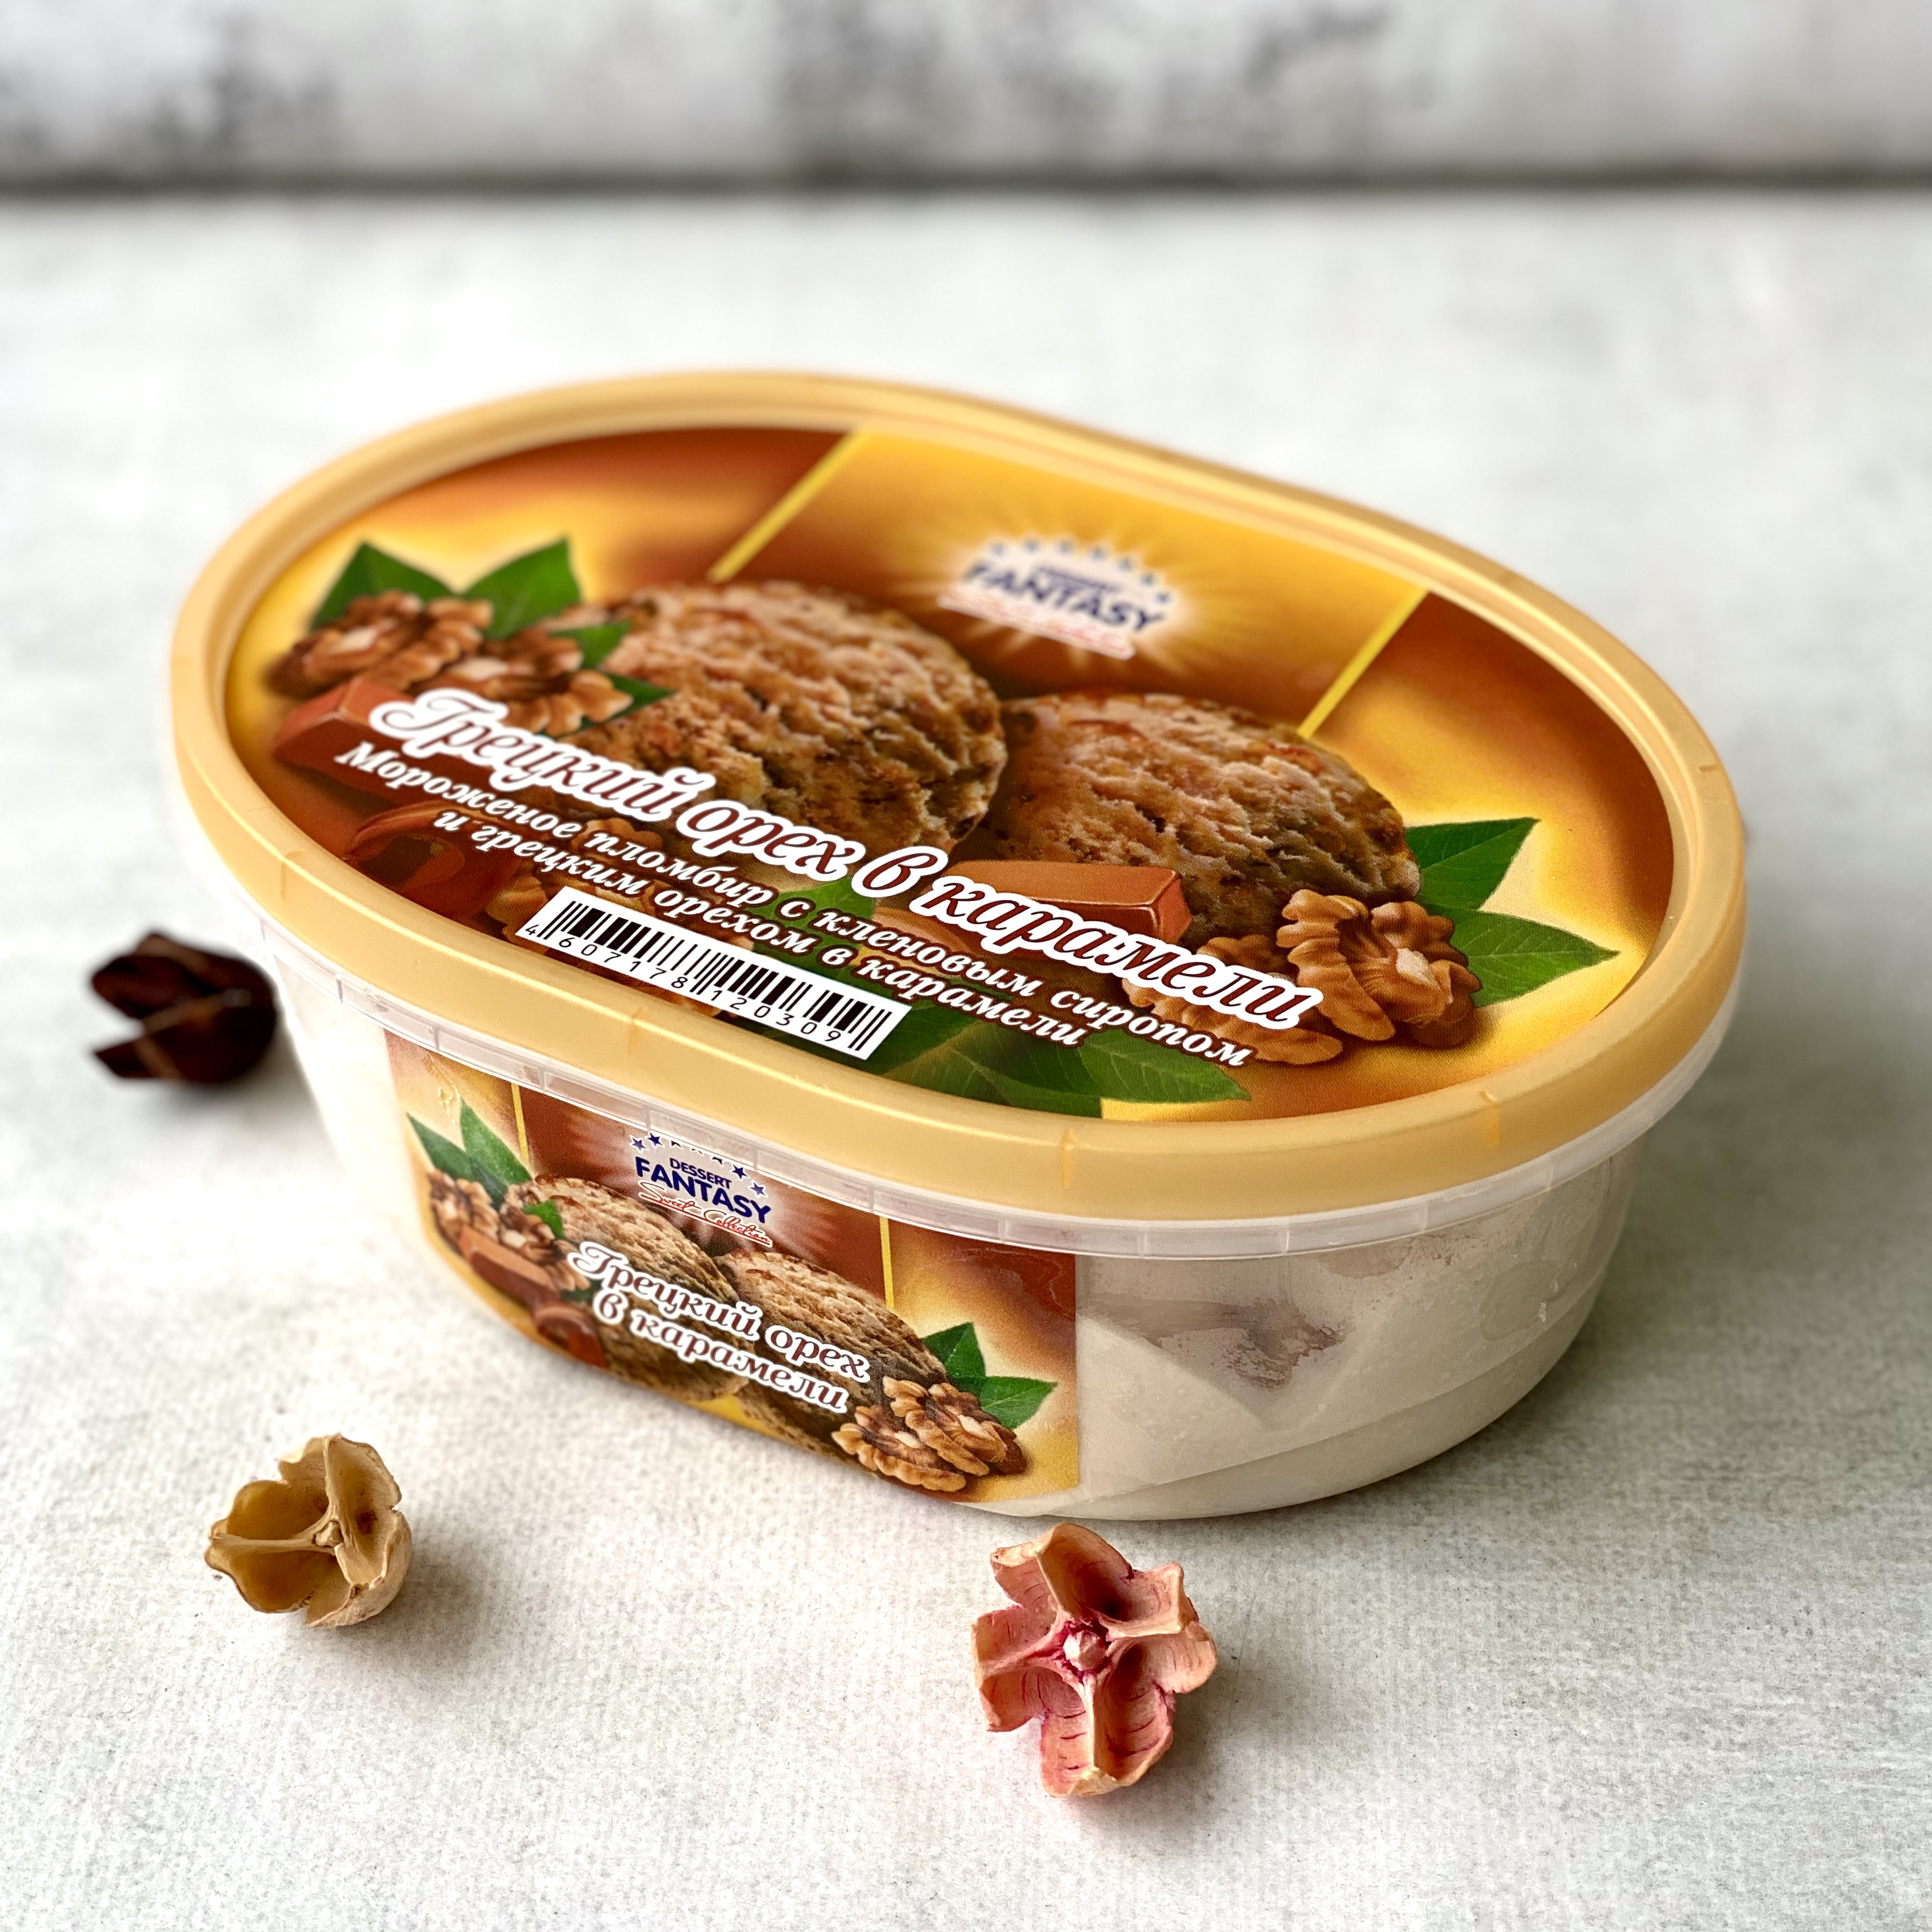 Мороженое пломбир с кленовым сиропом и грецким орехом в карамели изображение 2